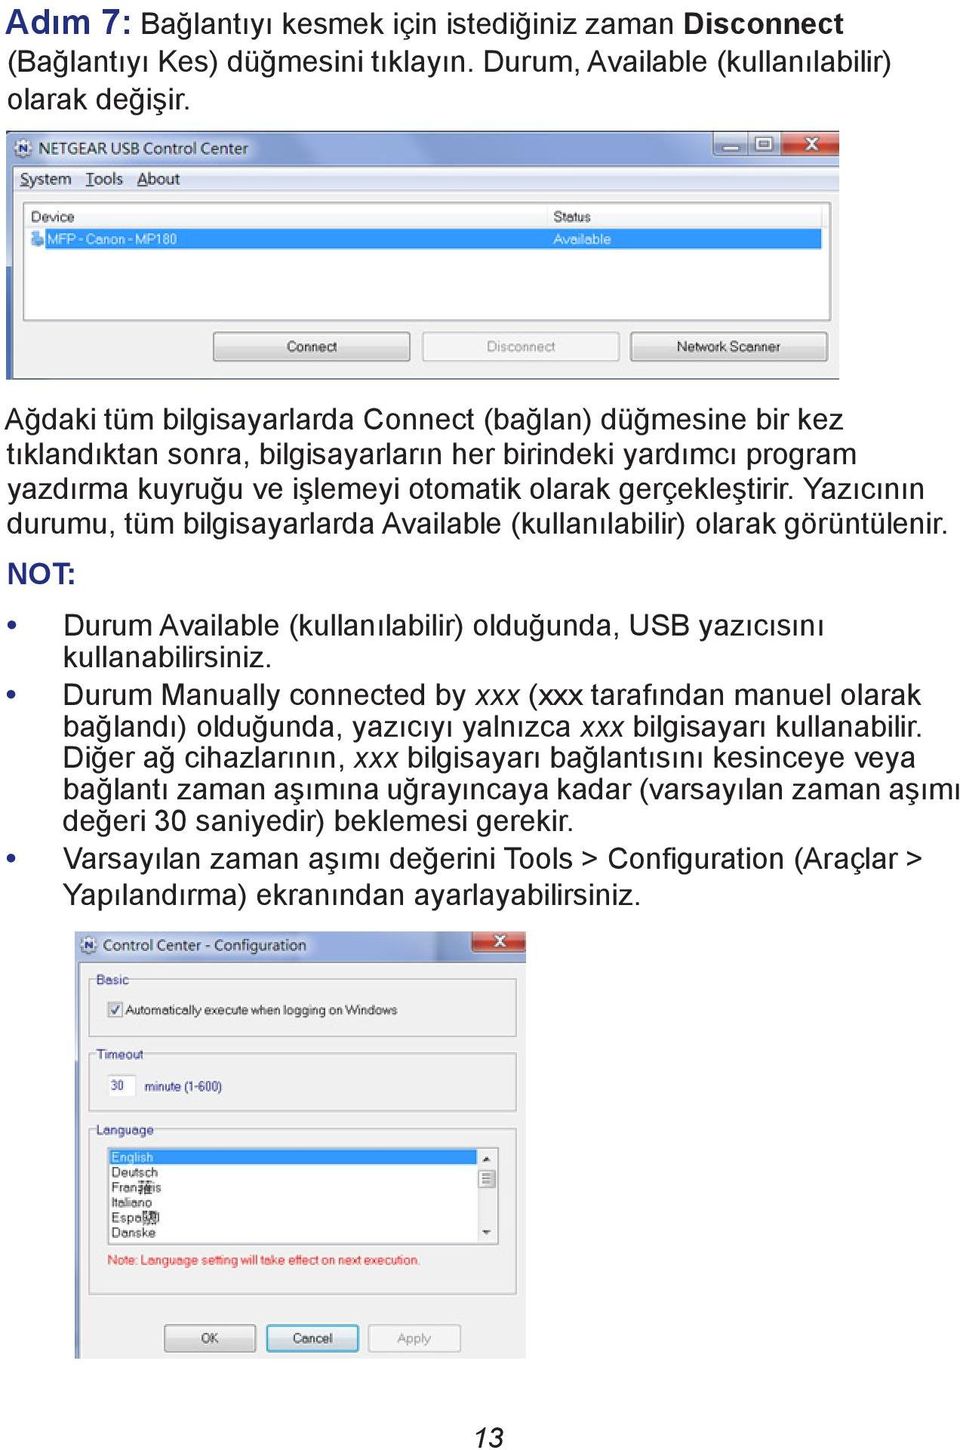 Yazıcının durumu, tüm bilgisayarlarda Available (kullanılabilir) olarak görüntülenir. NOT: Durum Available (kullanılabilir) olduğunda, USB yazıcısını kullanabilirsiniz.